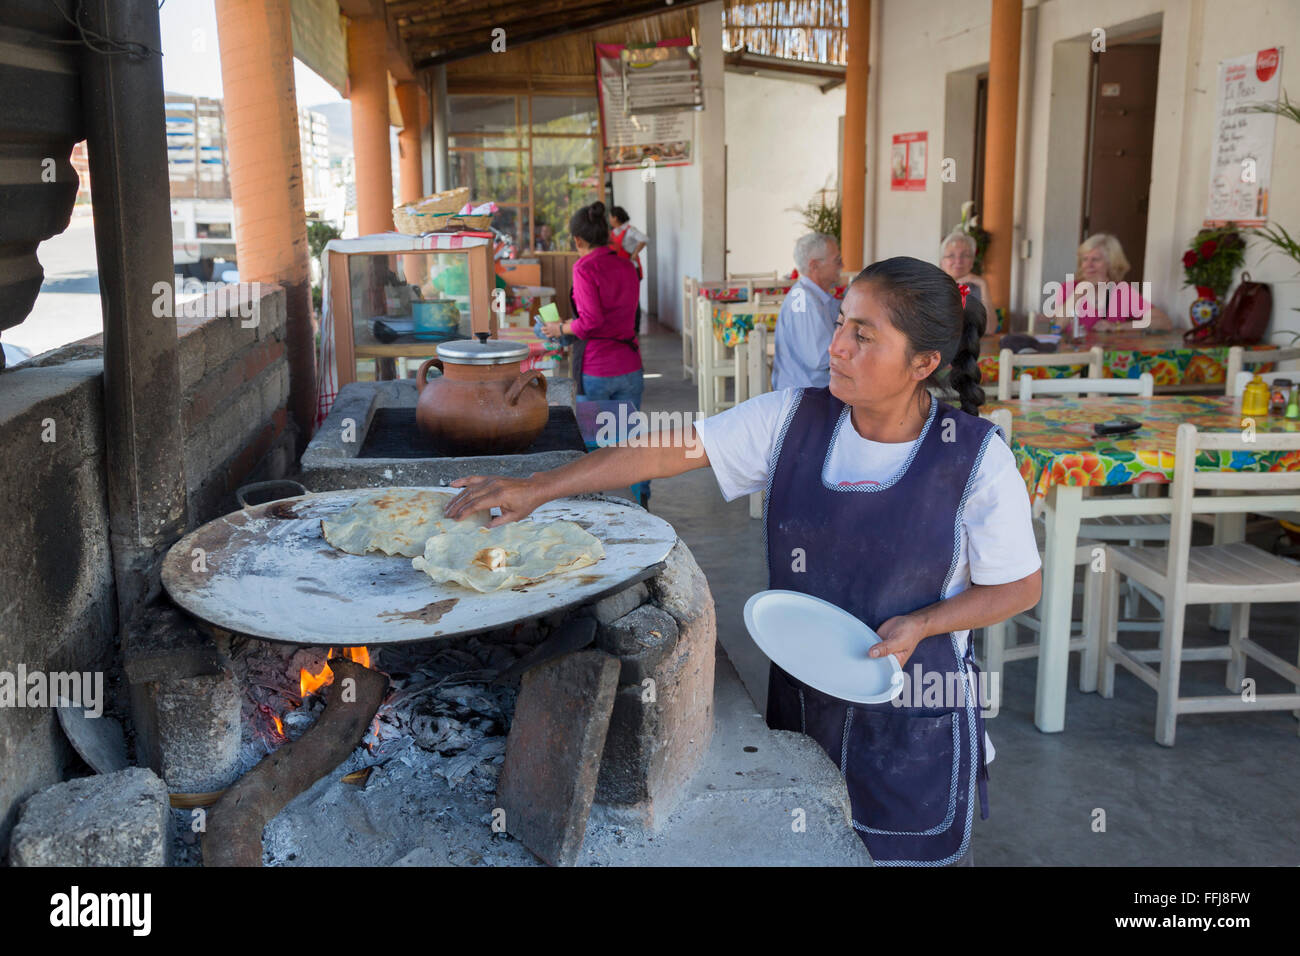 comal metálico muy caliente cocinando unas tortillas de maíz típicas de  guanacaste costa rica, en una estufa de acero a la leña Stock Photo